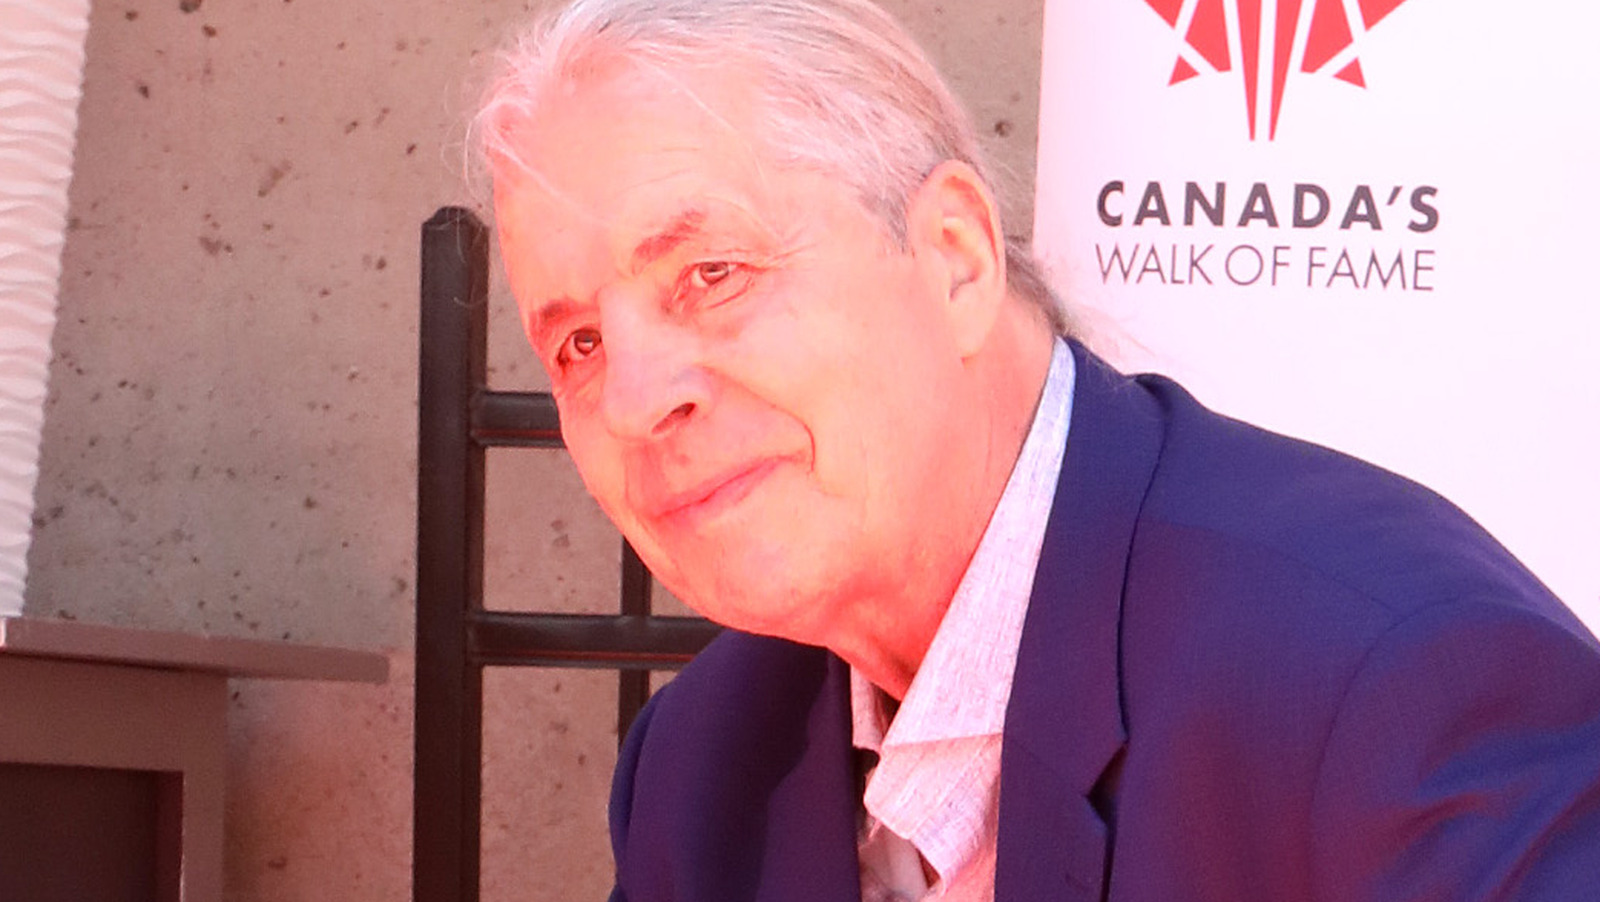 Bret Hart ontvangt zijn ster op de Walk of Fame van Canada